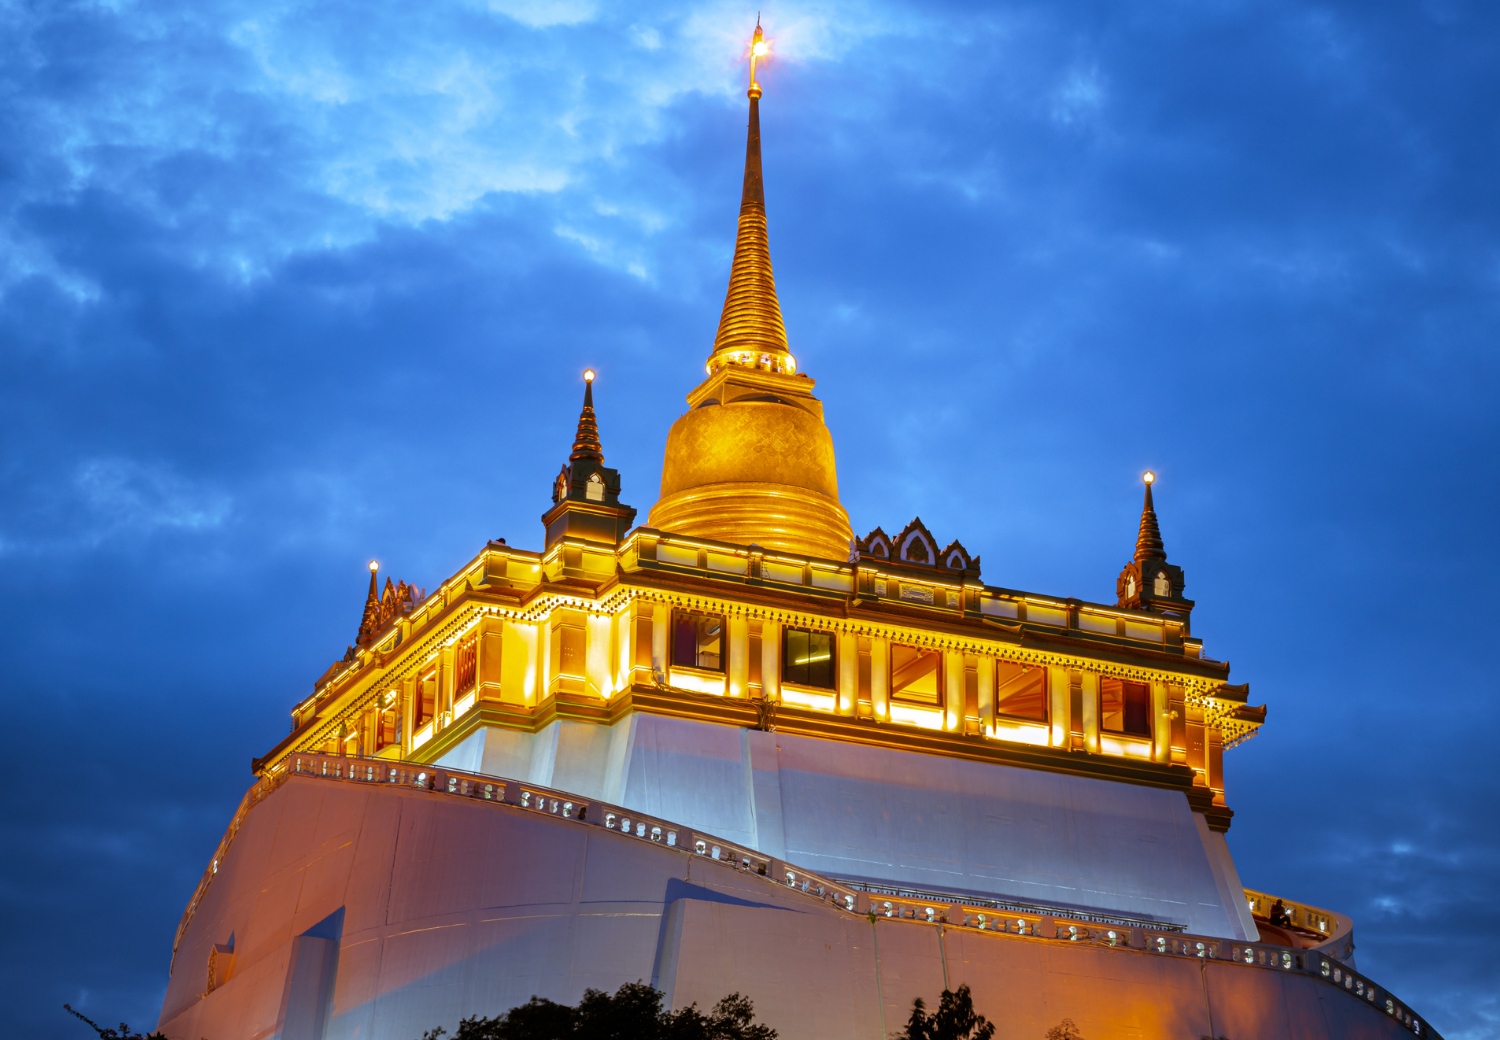 הר הזהב - The Golden Mount - Wat Saket